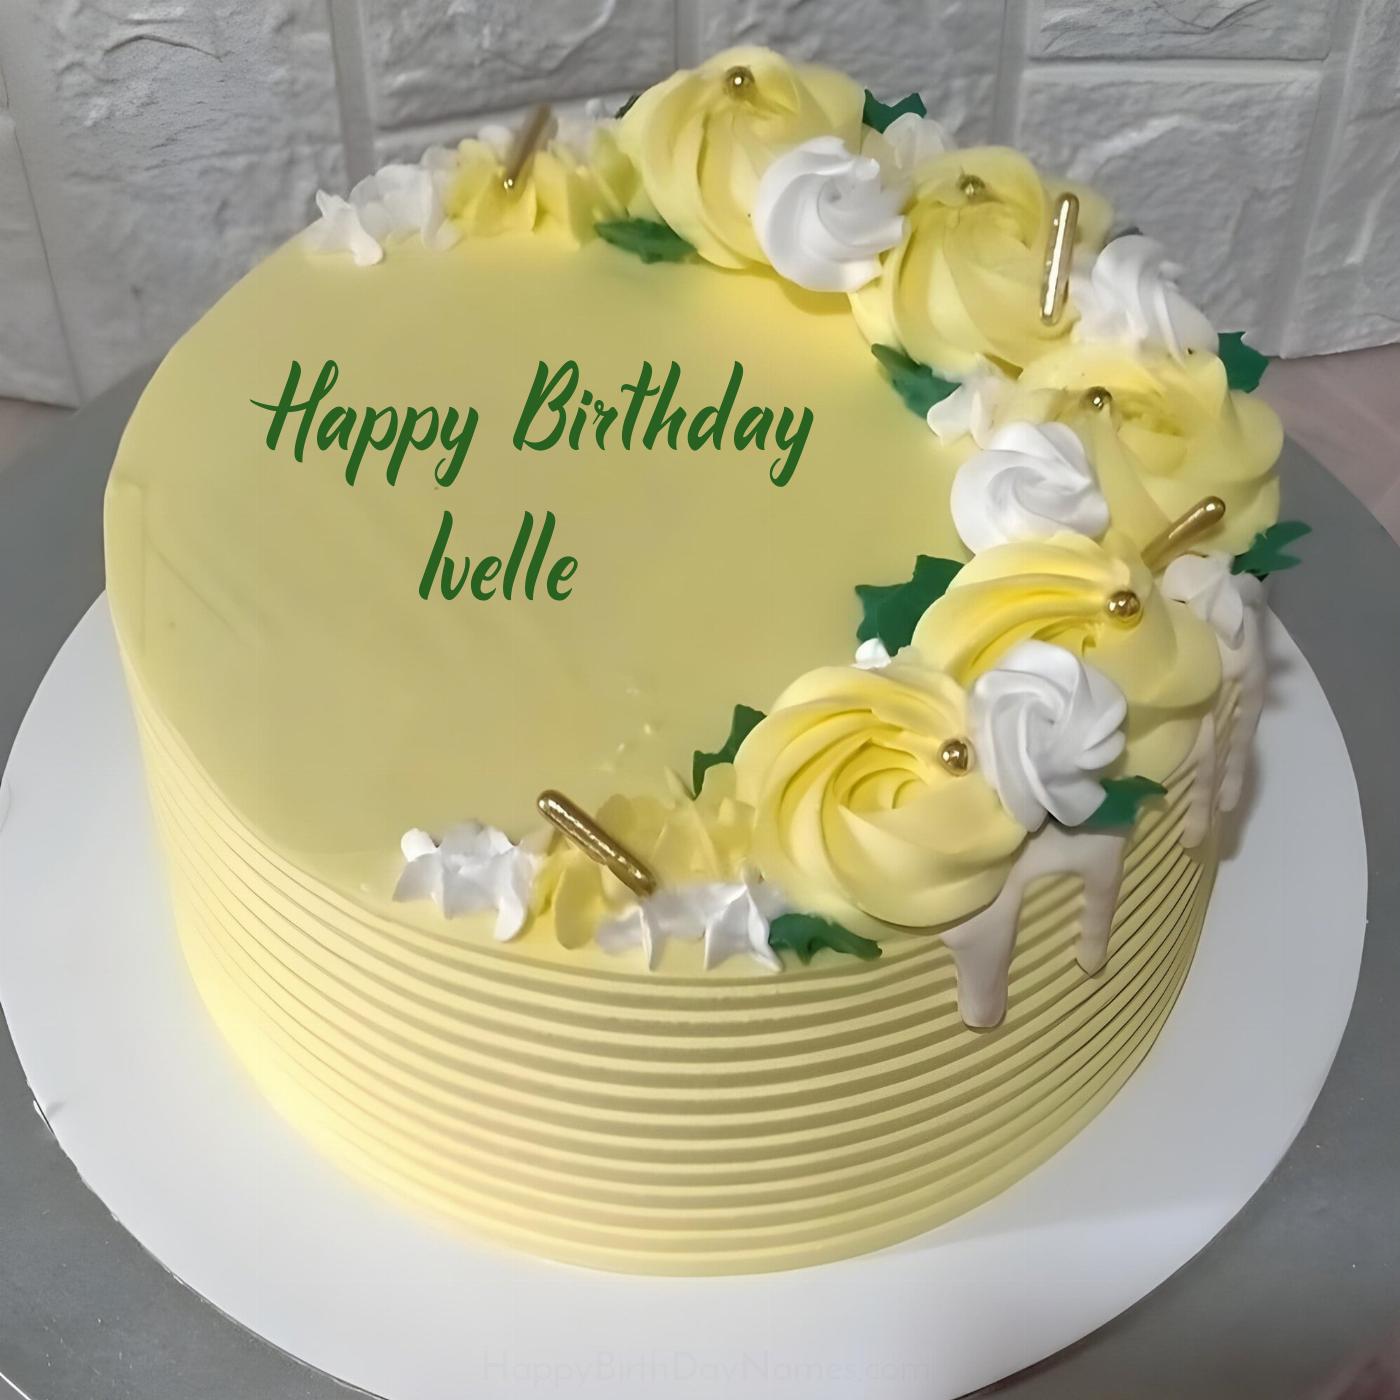 Happy Birthday Ivelle Yellow Flowers Cake